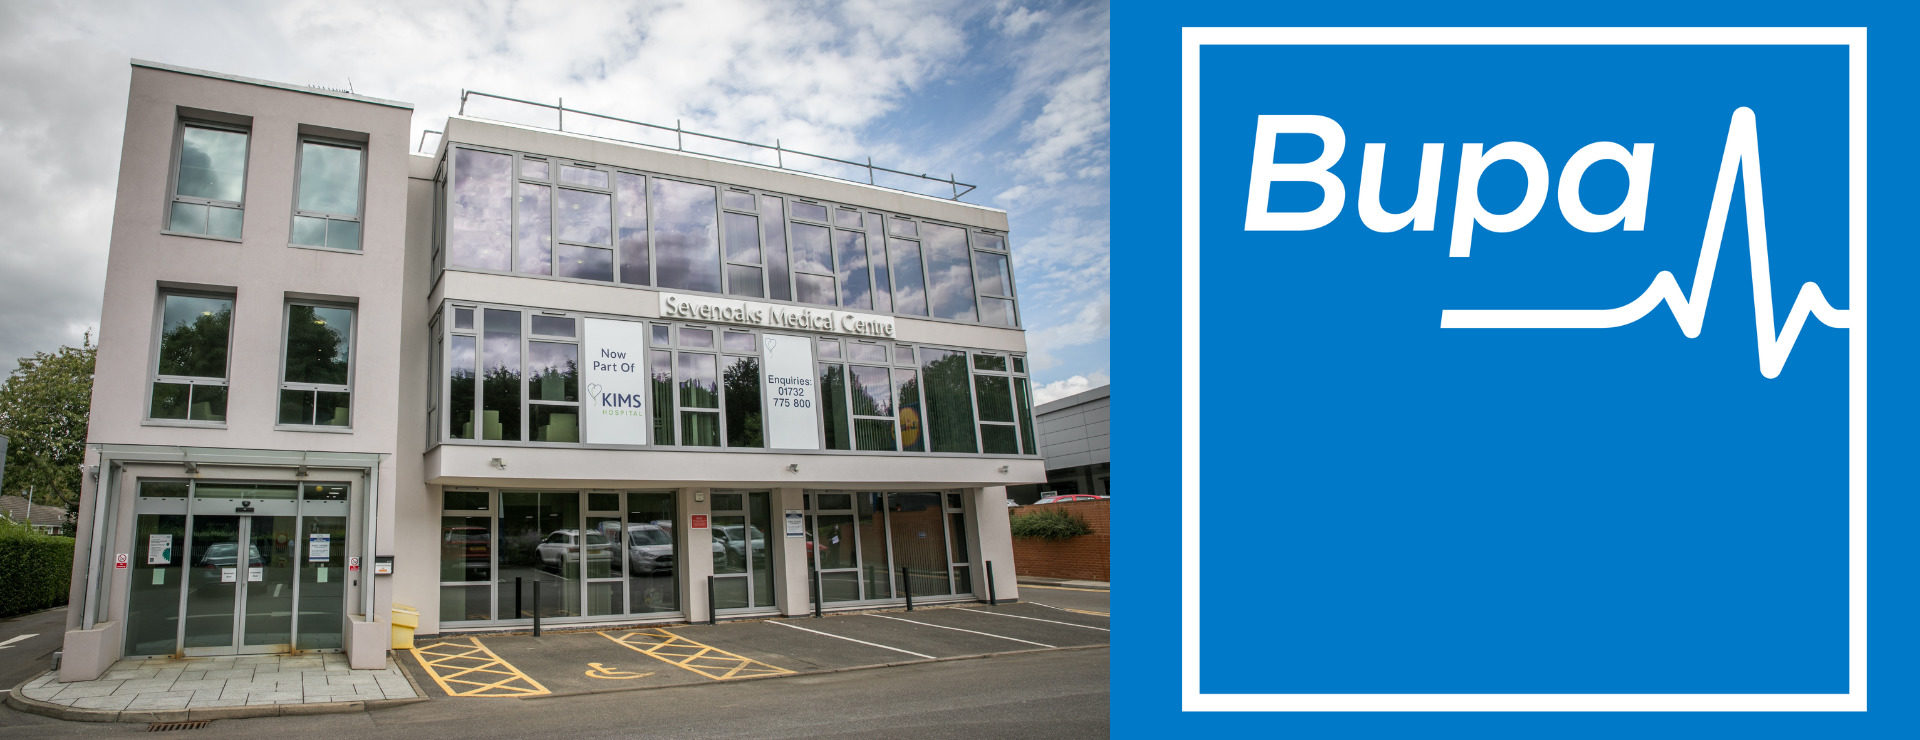 Bupa open new clinic at Sevenoaks Medical Centre